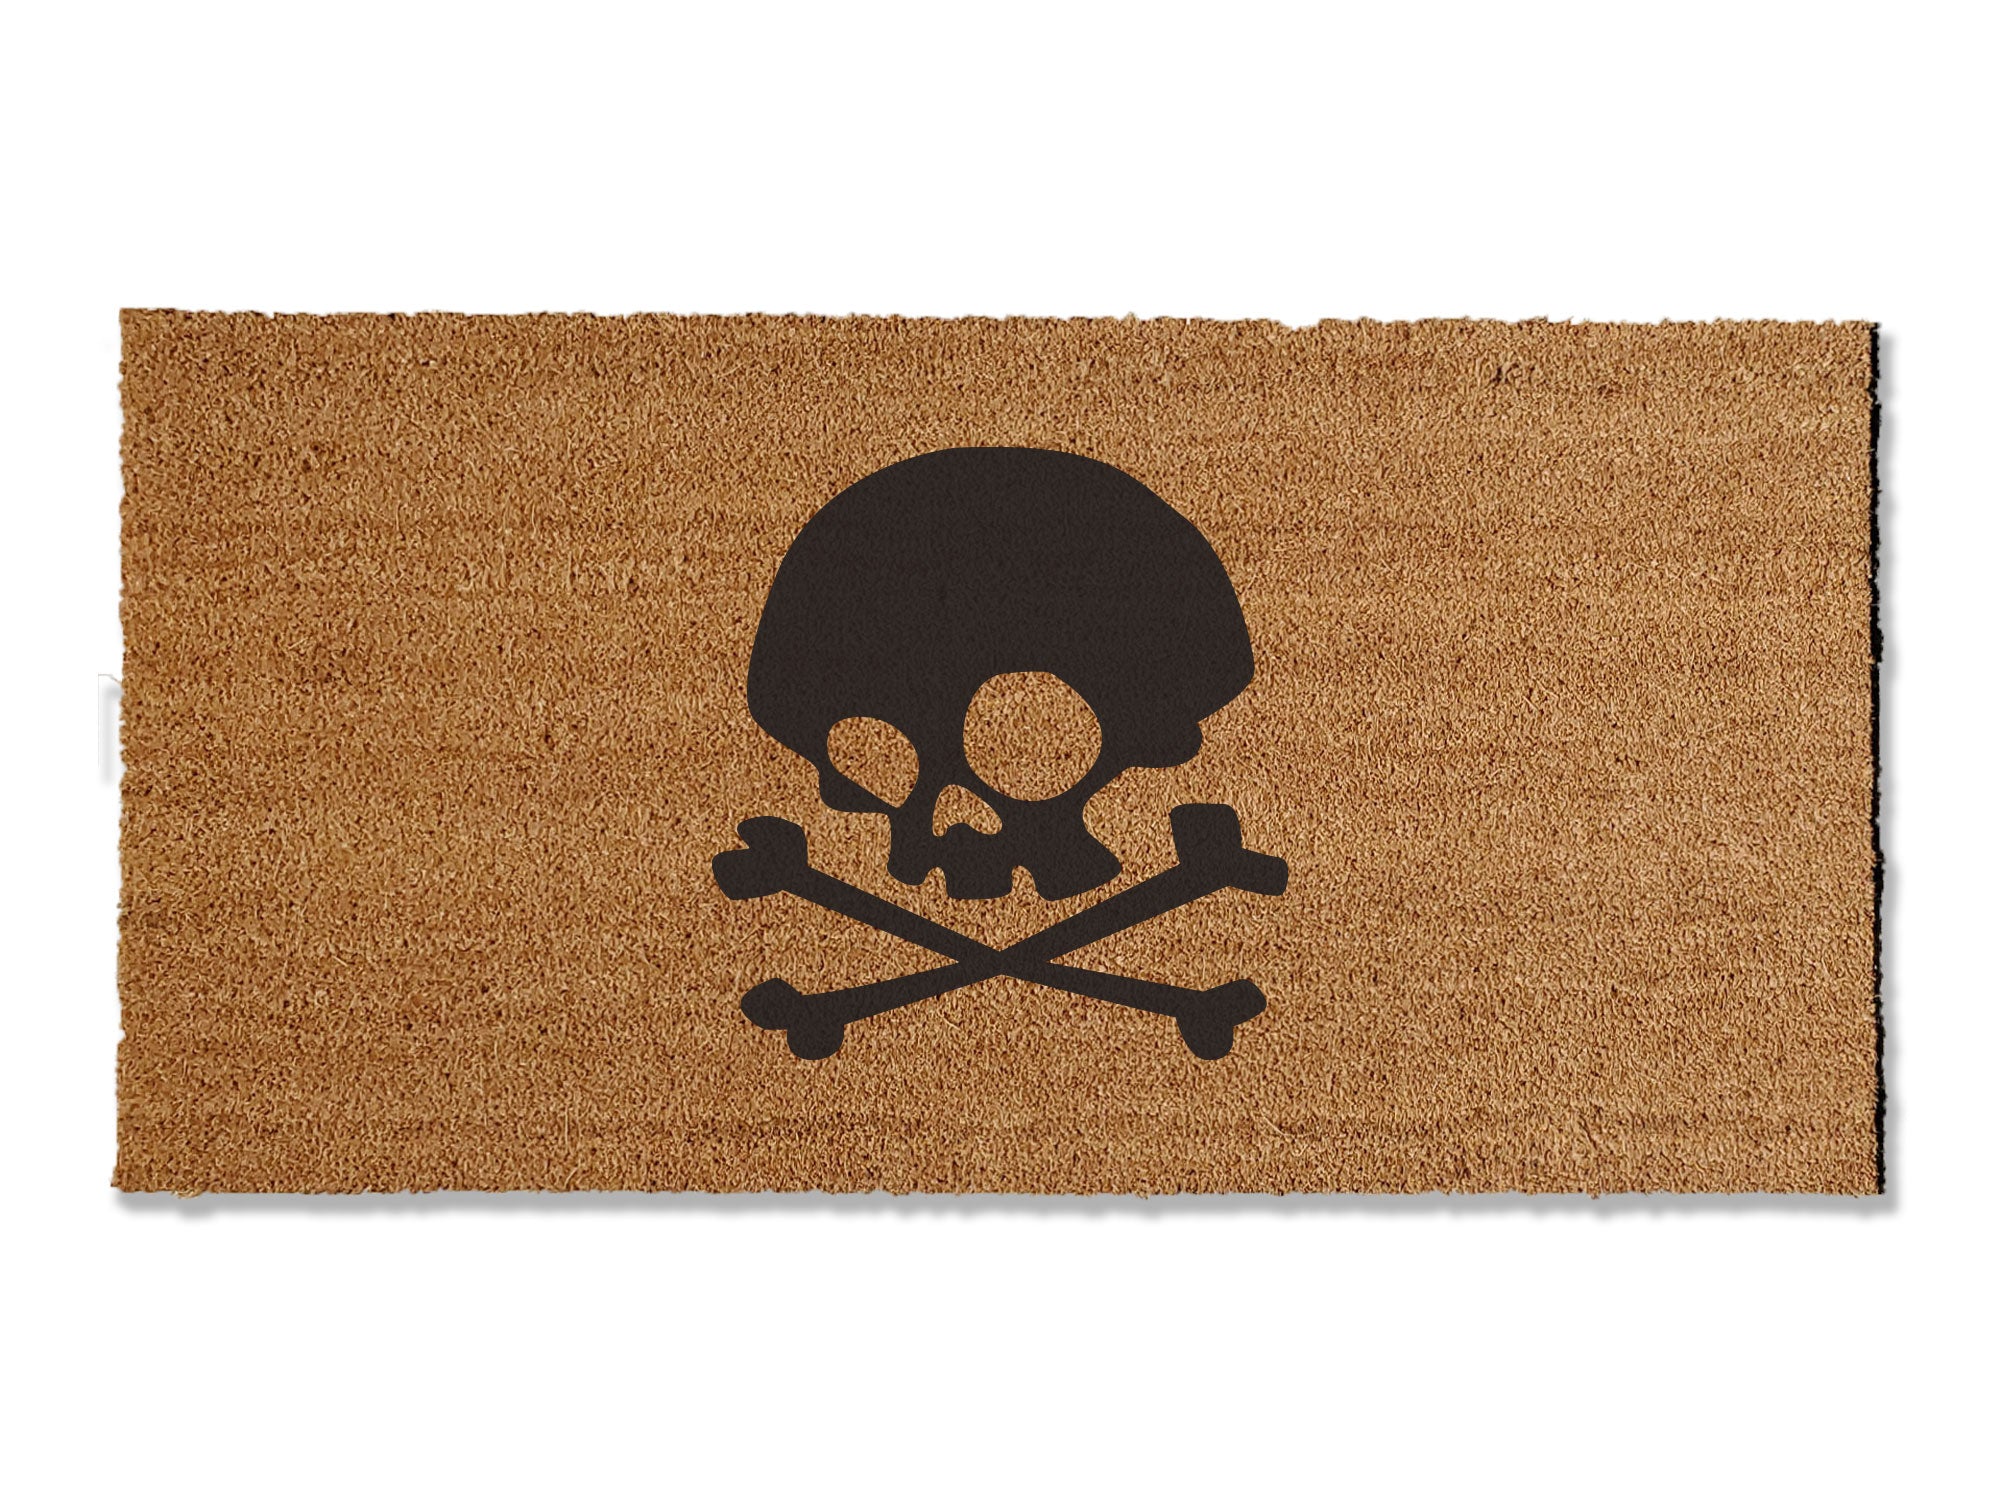 Skull and Crossbones Doormat